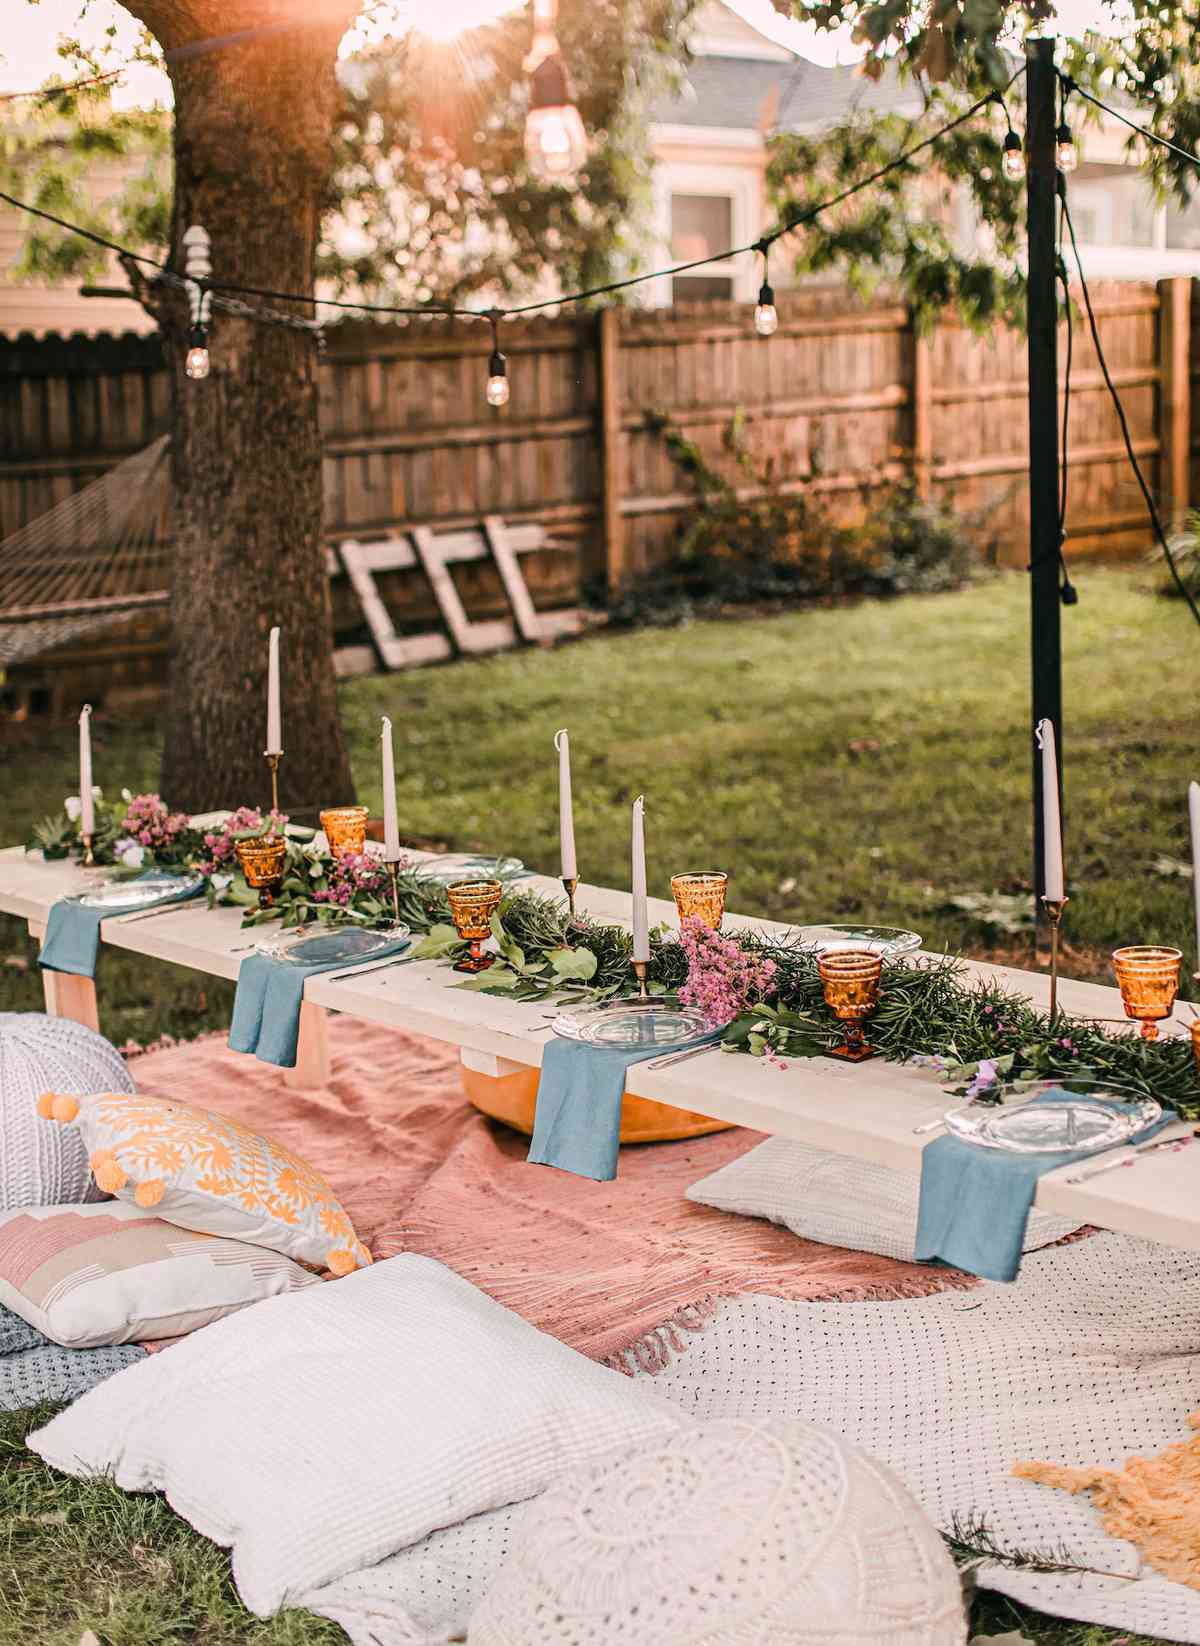 Decora la mesa para una fiesta en el jardín este verano ¡4 ideas geniales! 1